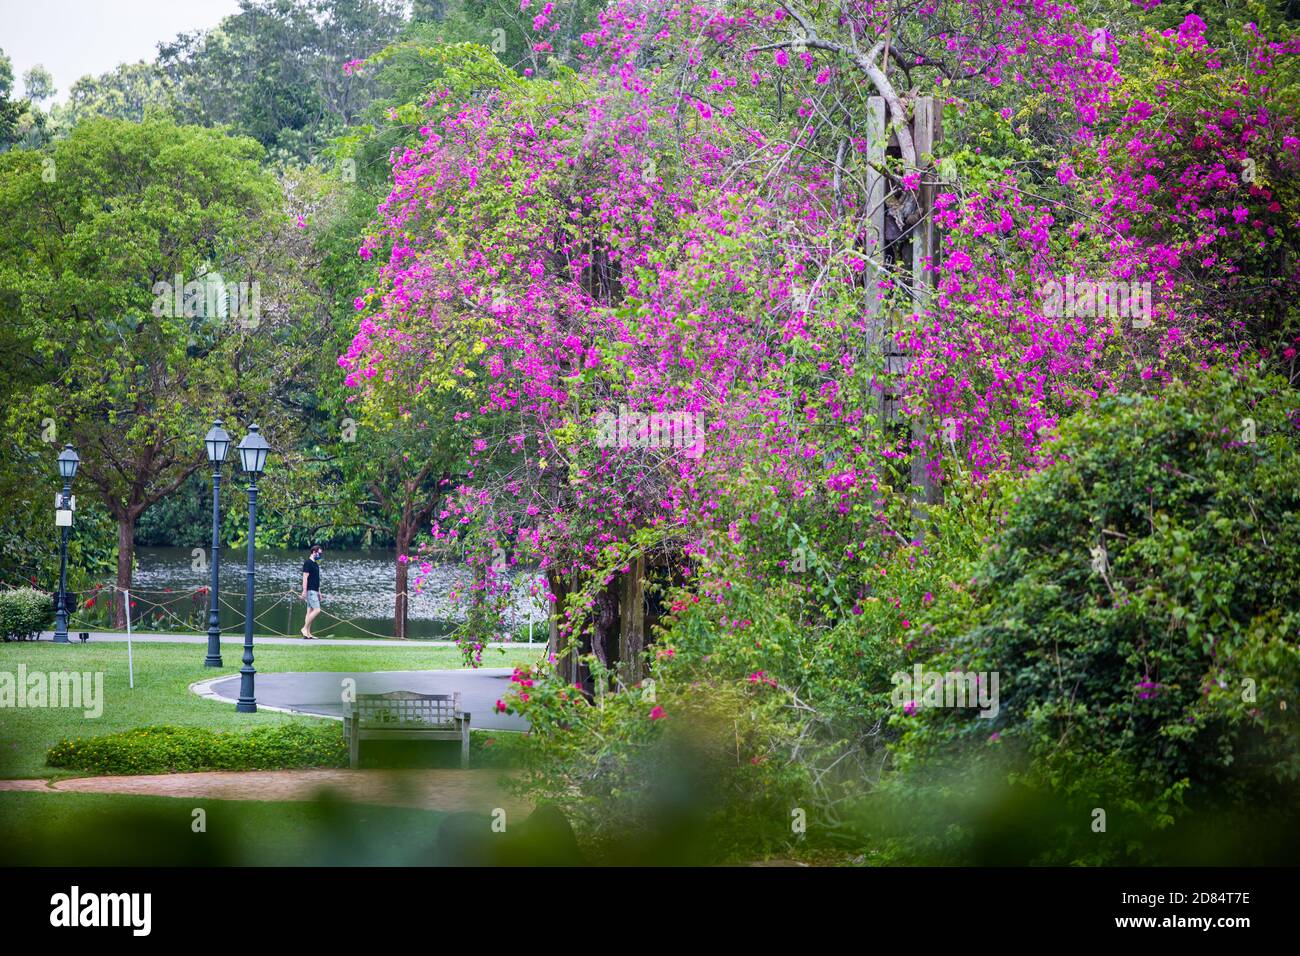 Un uomo in maglietta nera sta camminando nel giardino, accompagnato da un delizioso albero di bouganville in piena fioritura. Giardini botanici di Singapore Foto Stock